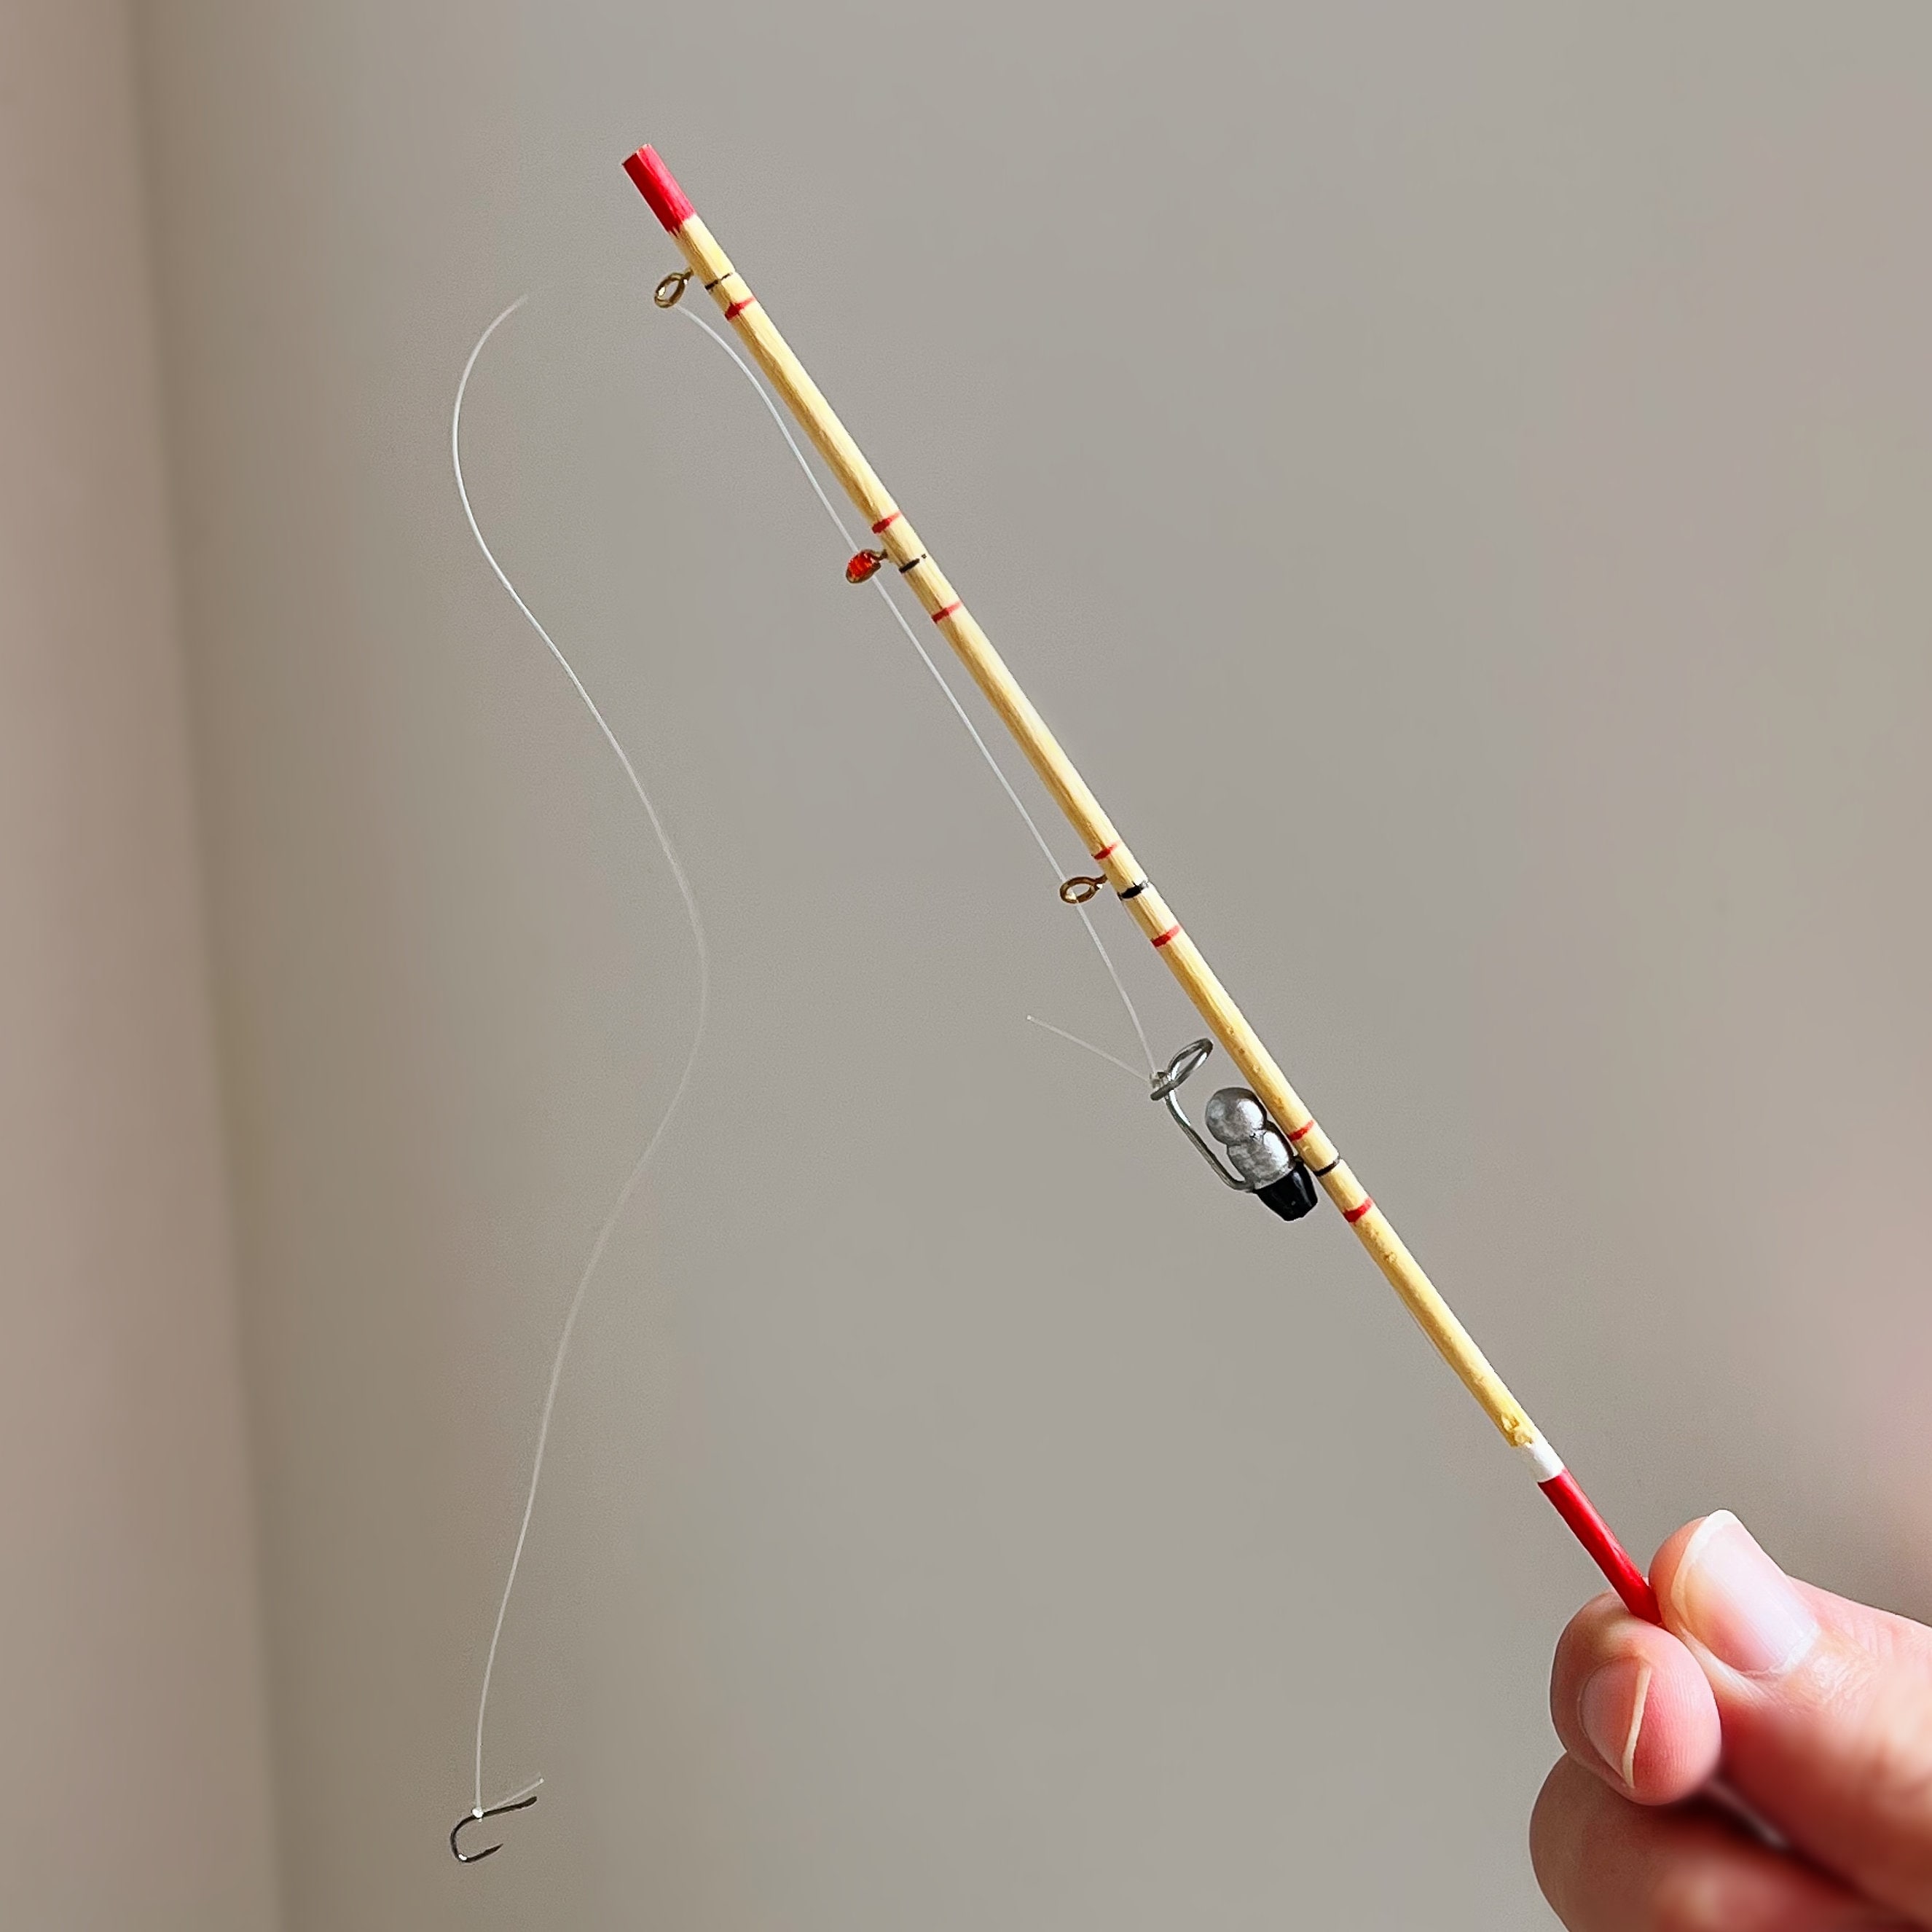 DIY Tiny Fishing Rod (Toy) 